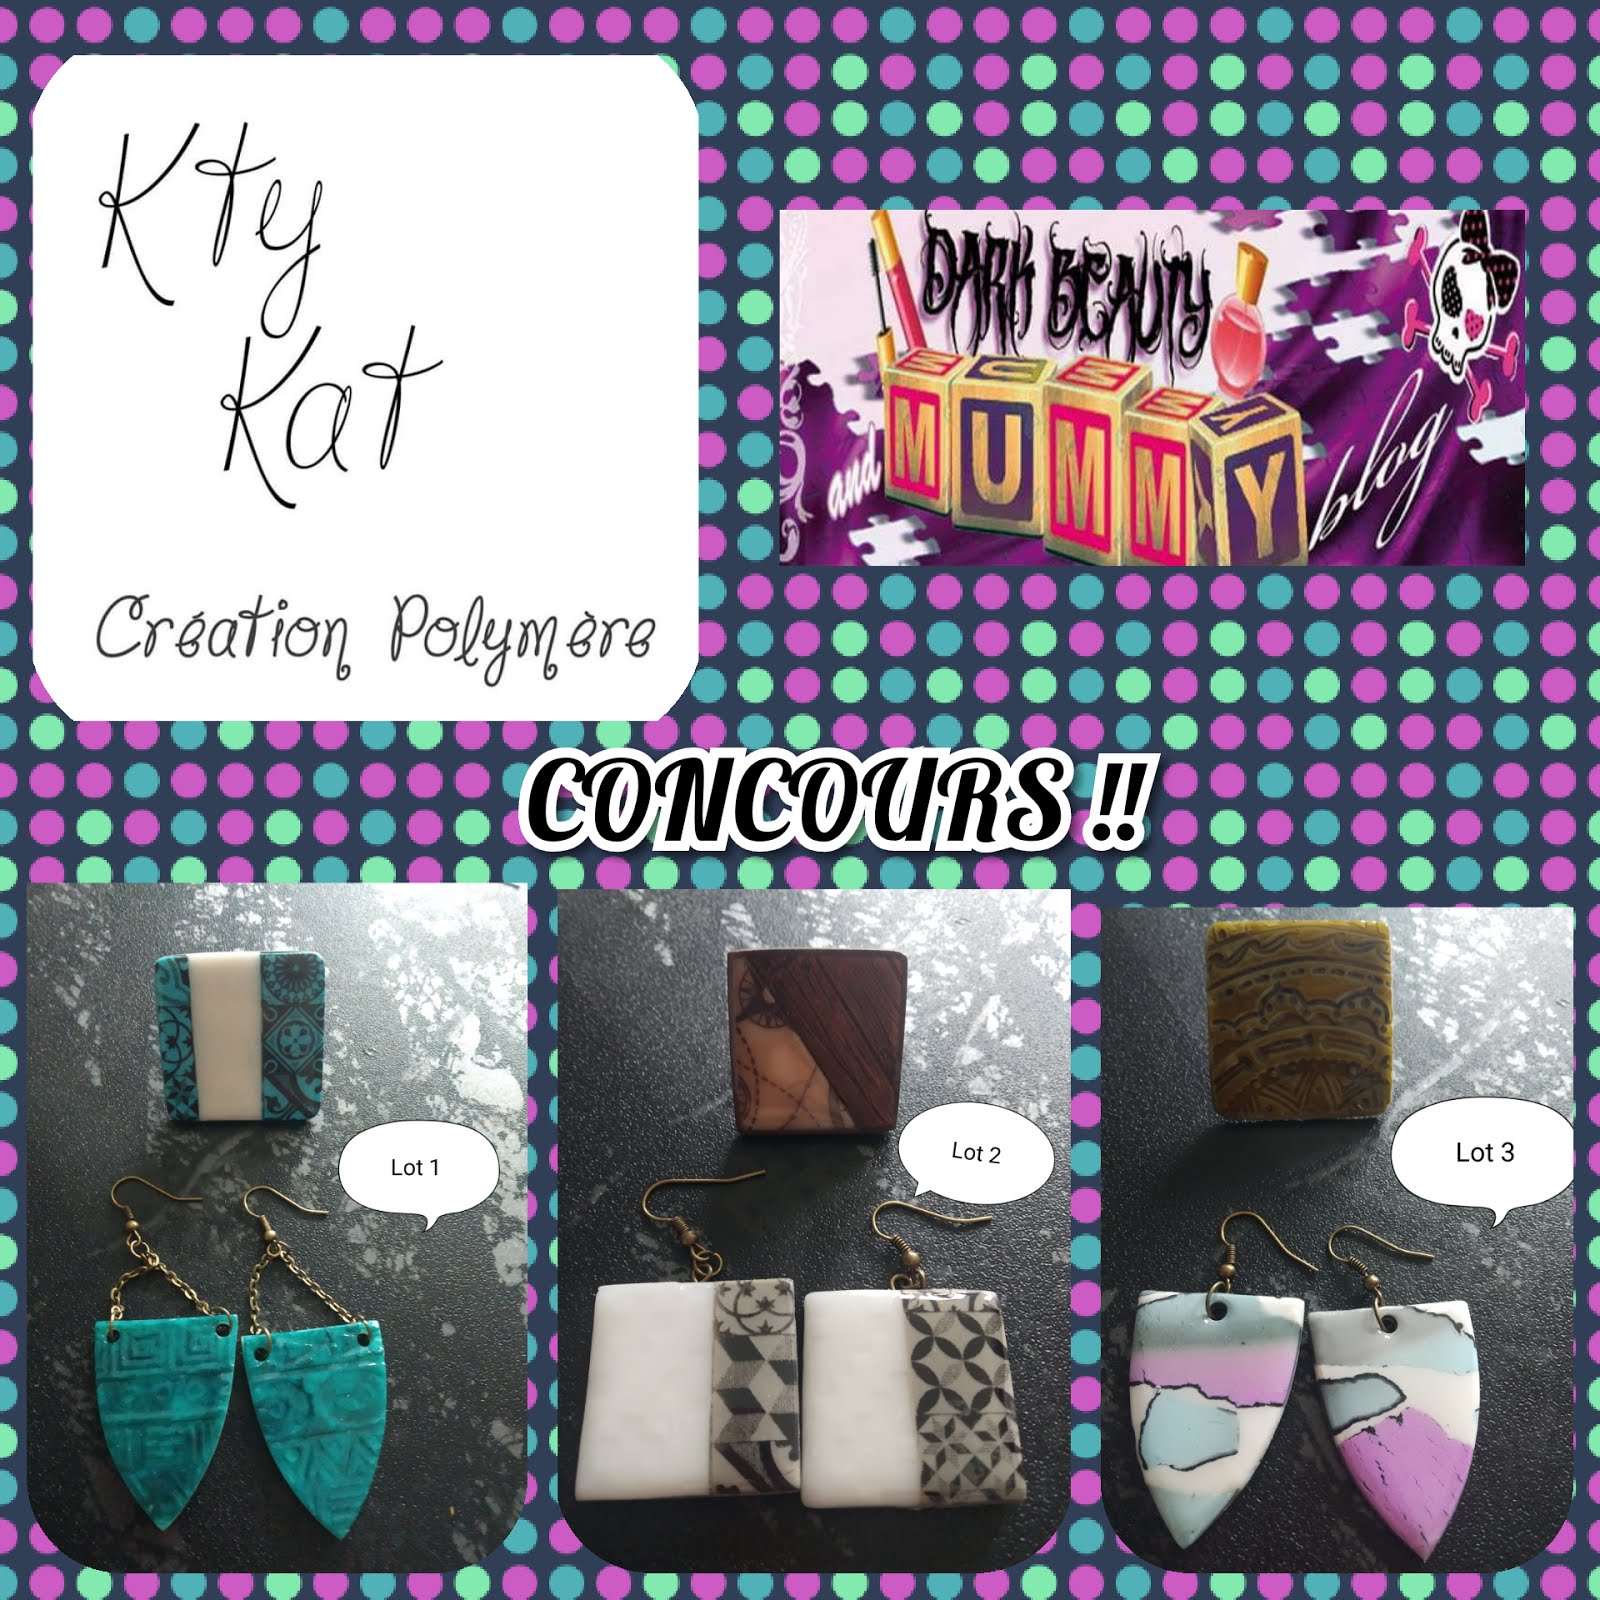 Concours en partenariat avec Kty'Kat créations